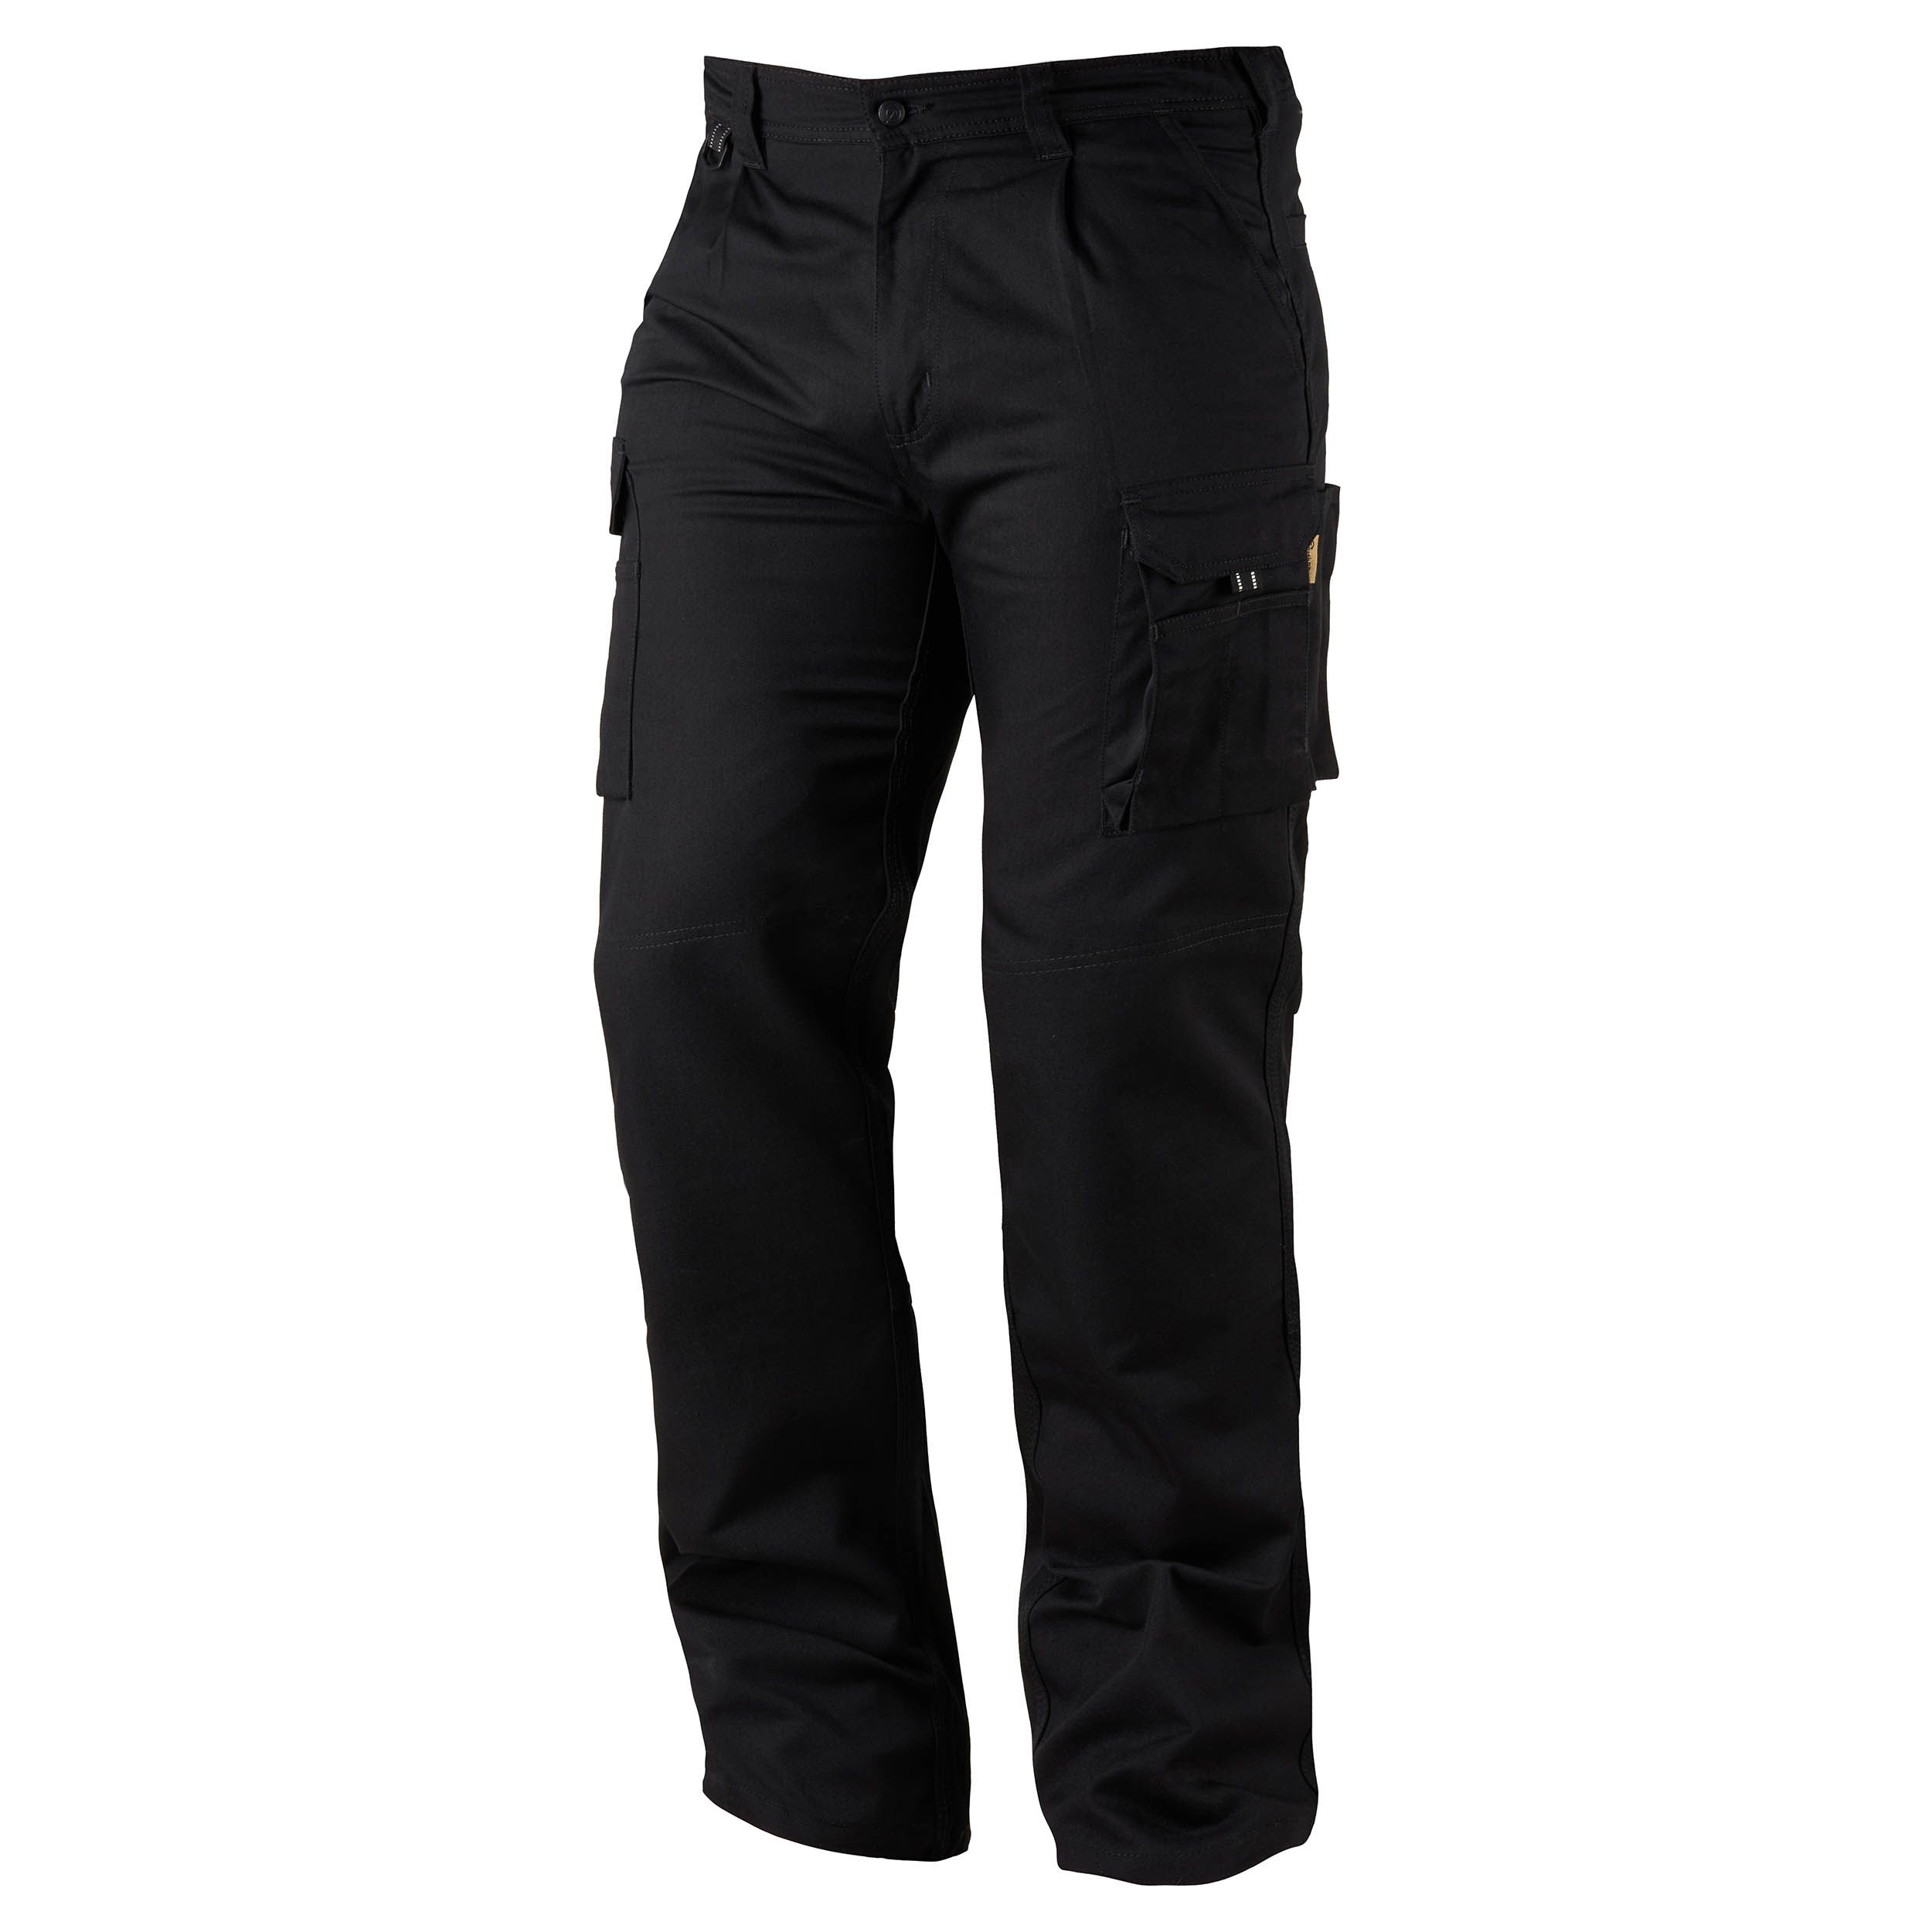 Pantalon de travail Orn Hawk EarthPro Combat Trouser, 86 → 91cm Homme, Noir en Coton, polyester recyclé,